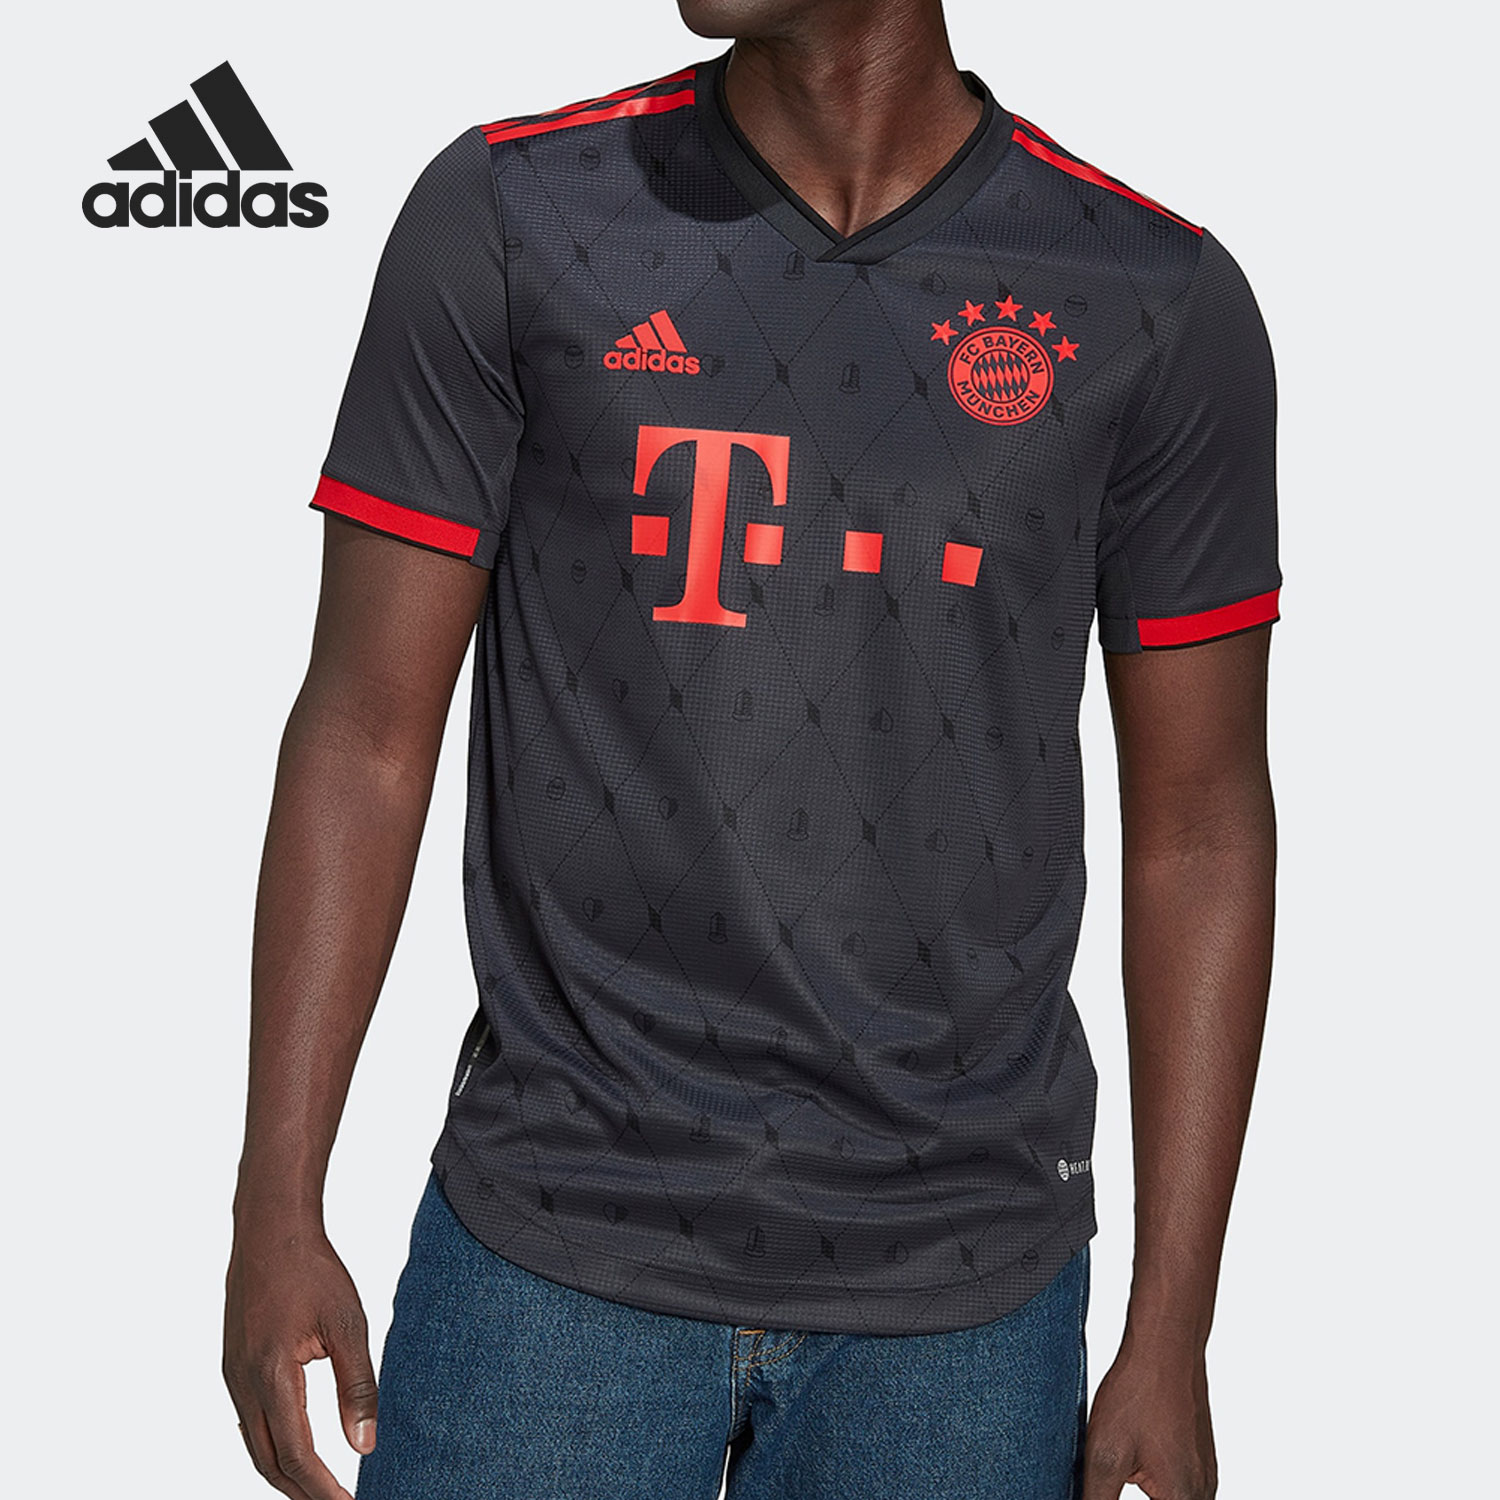 Adidas/阿迪达斯官方正品FCB 3 AU JSY 拜仁慕尼黑足球短袖H39910 运动服/休闲服装 运动T恤 原图主图